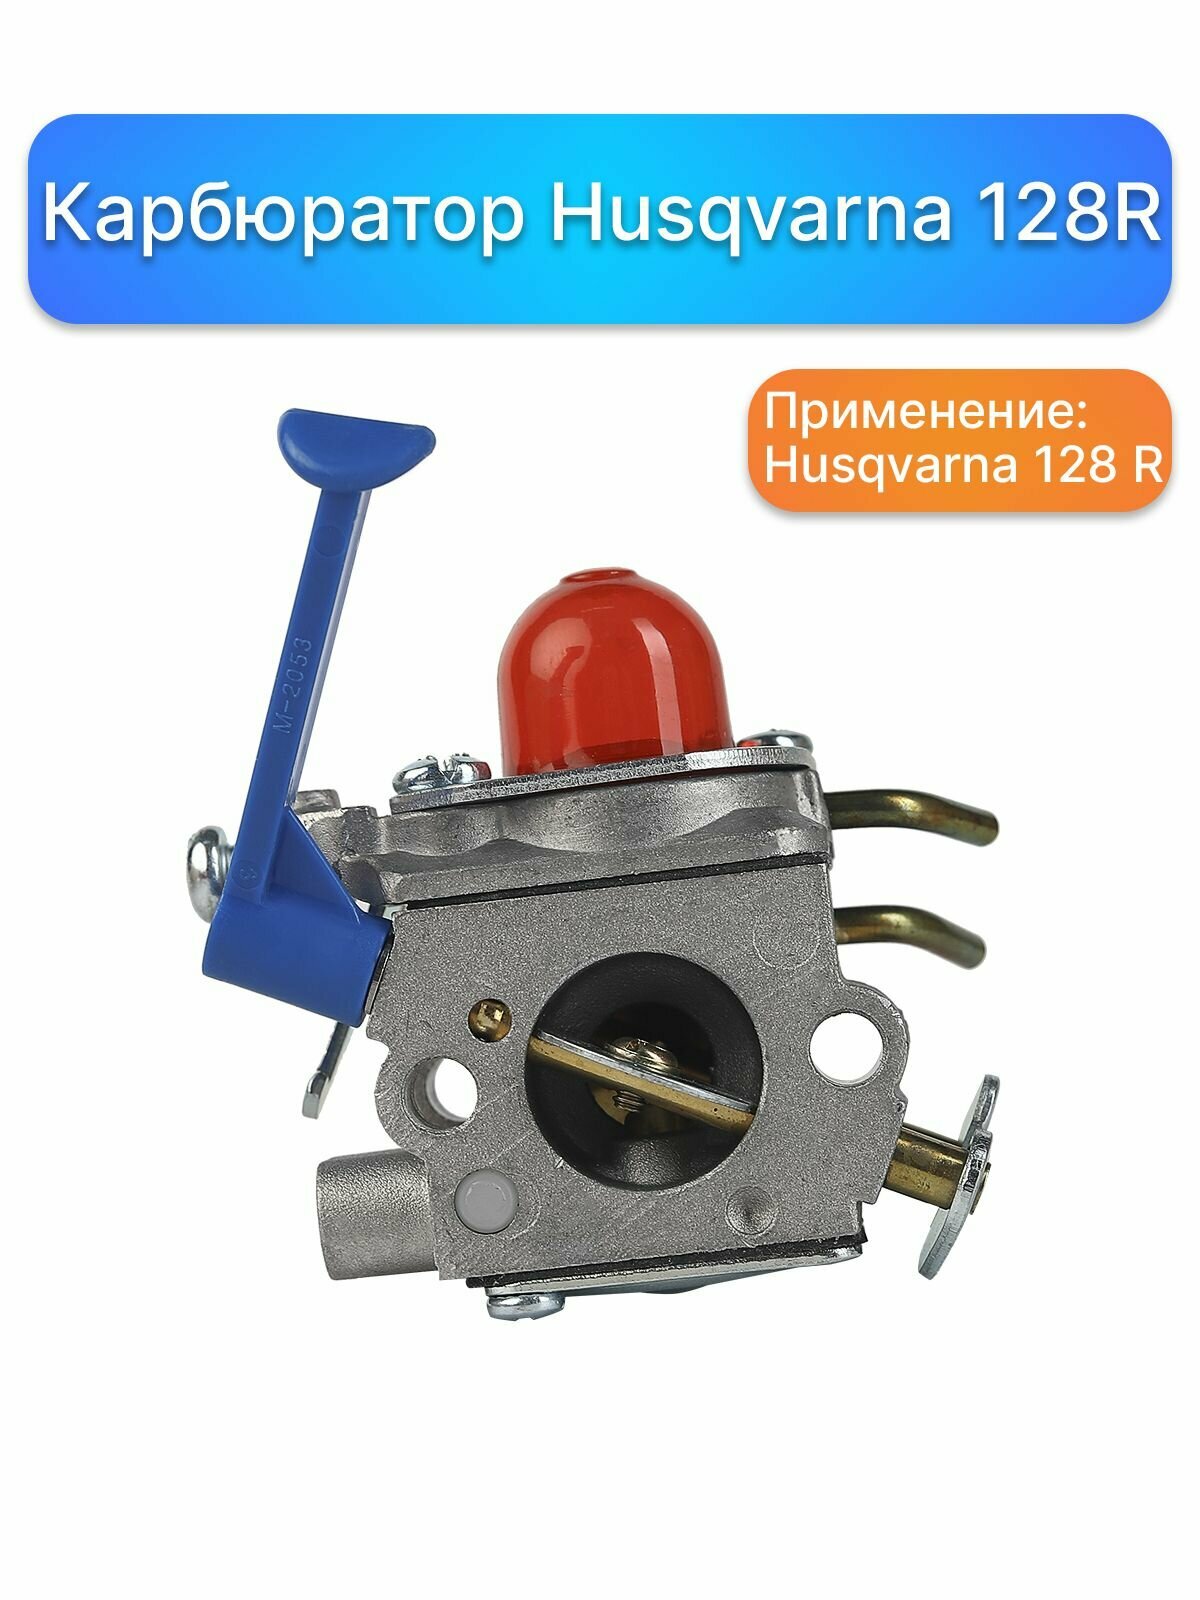 Карбюратор для бензокосы (триммера) Husqvarna 128 R, запчасти для садовой техники, комплектующие для ремонта, ремкомплект двигатель - фотография № 3